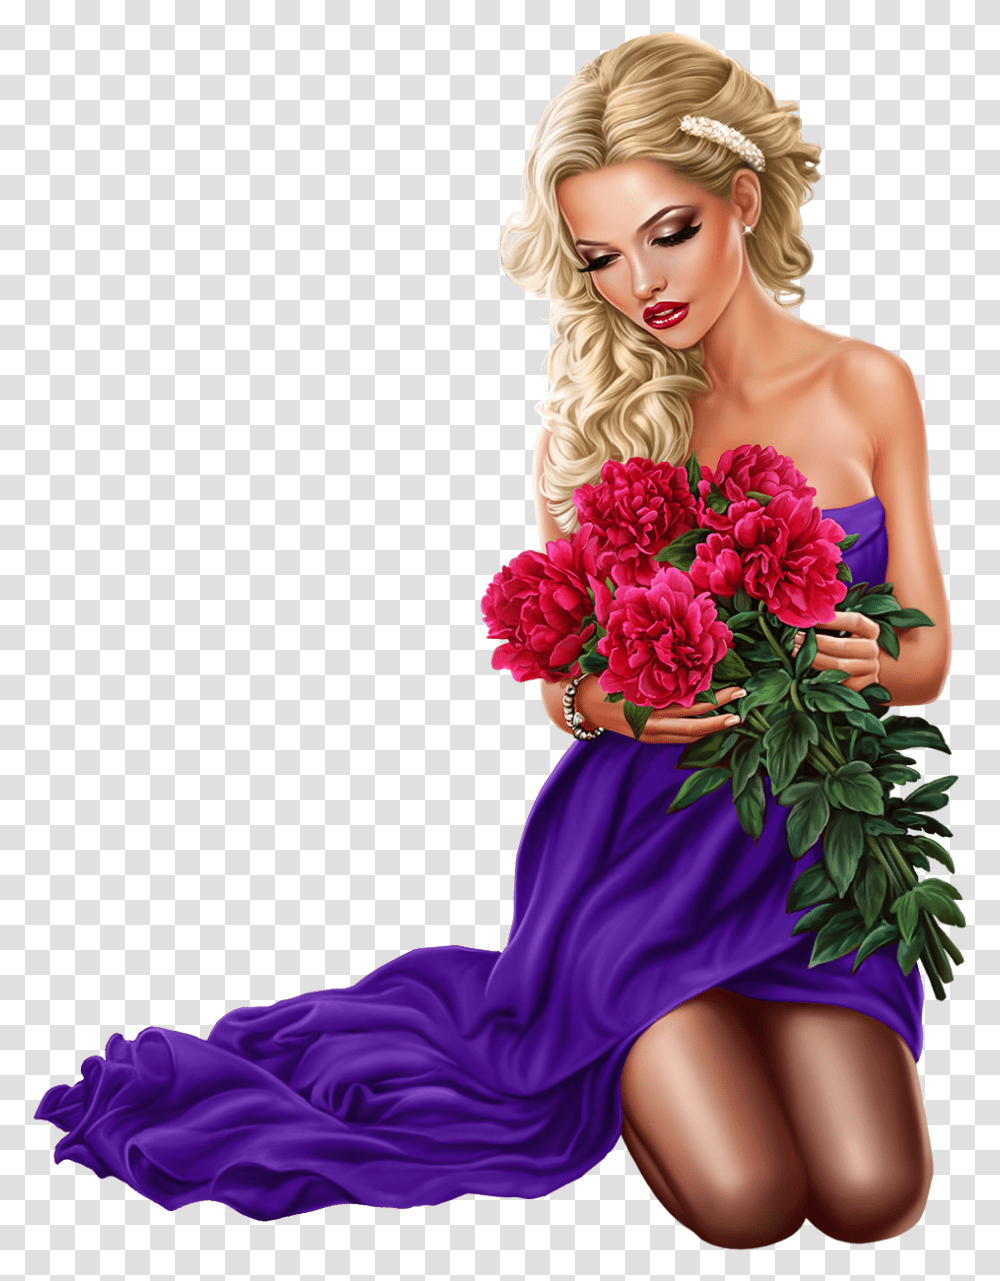 Femmes, Plant, Person, Flower, Dress Transparent Png